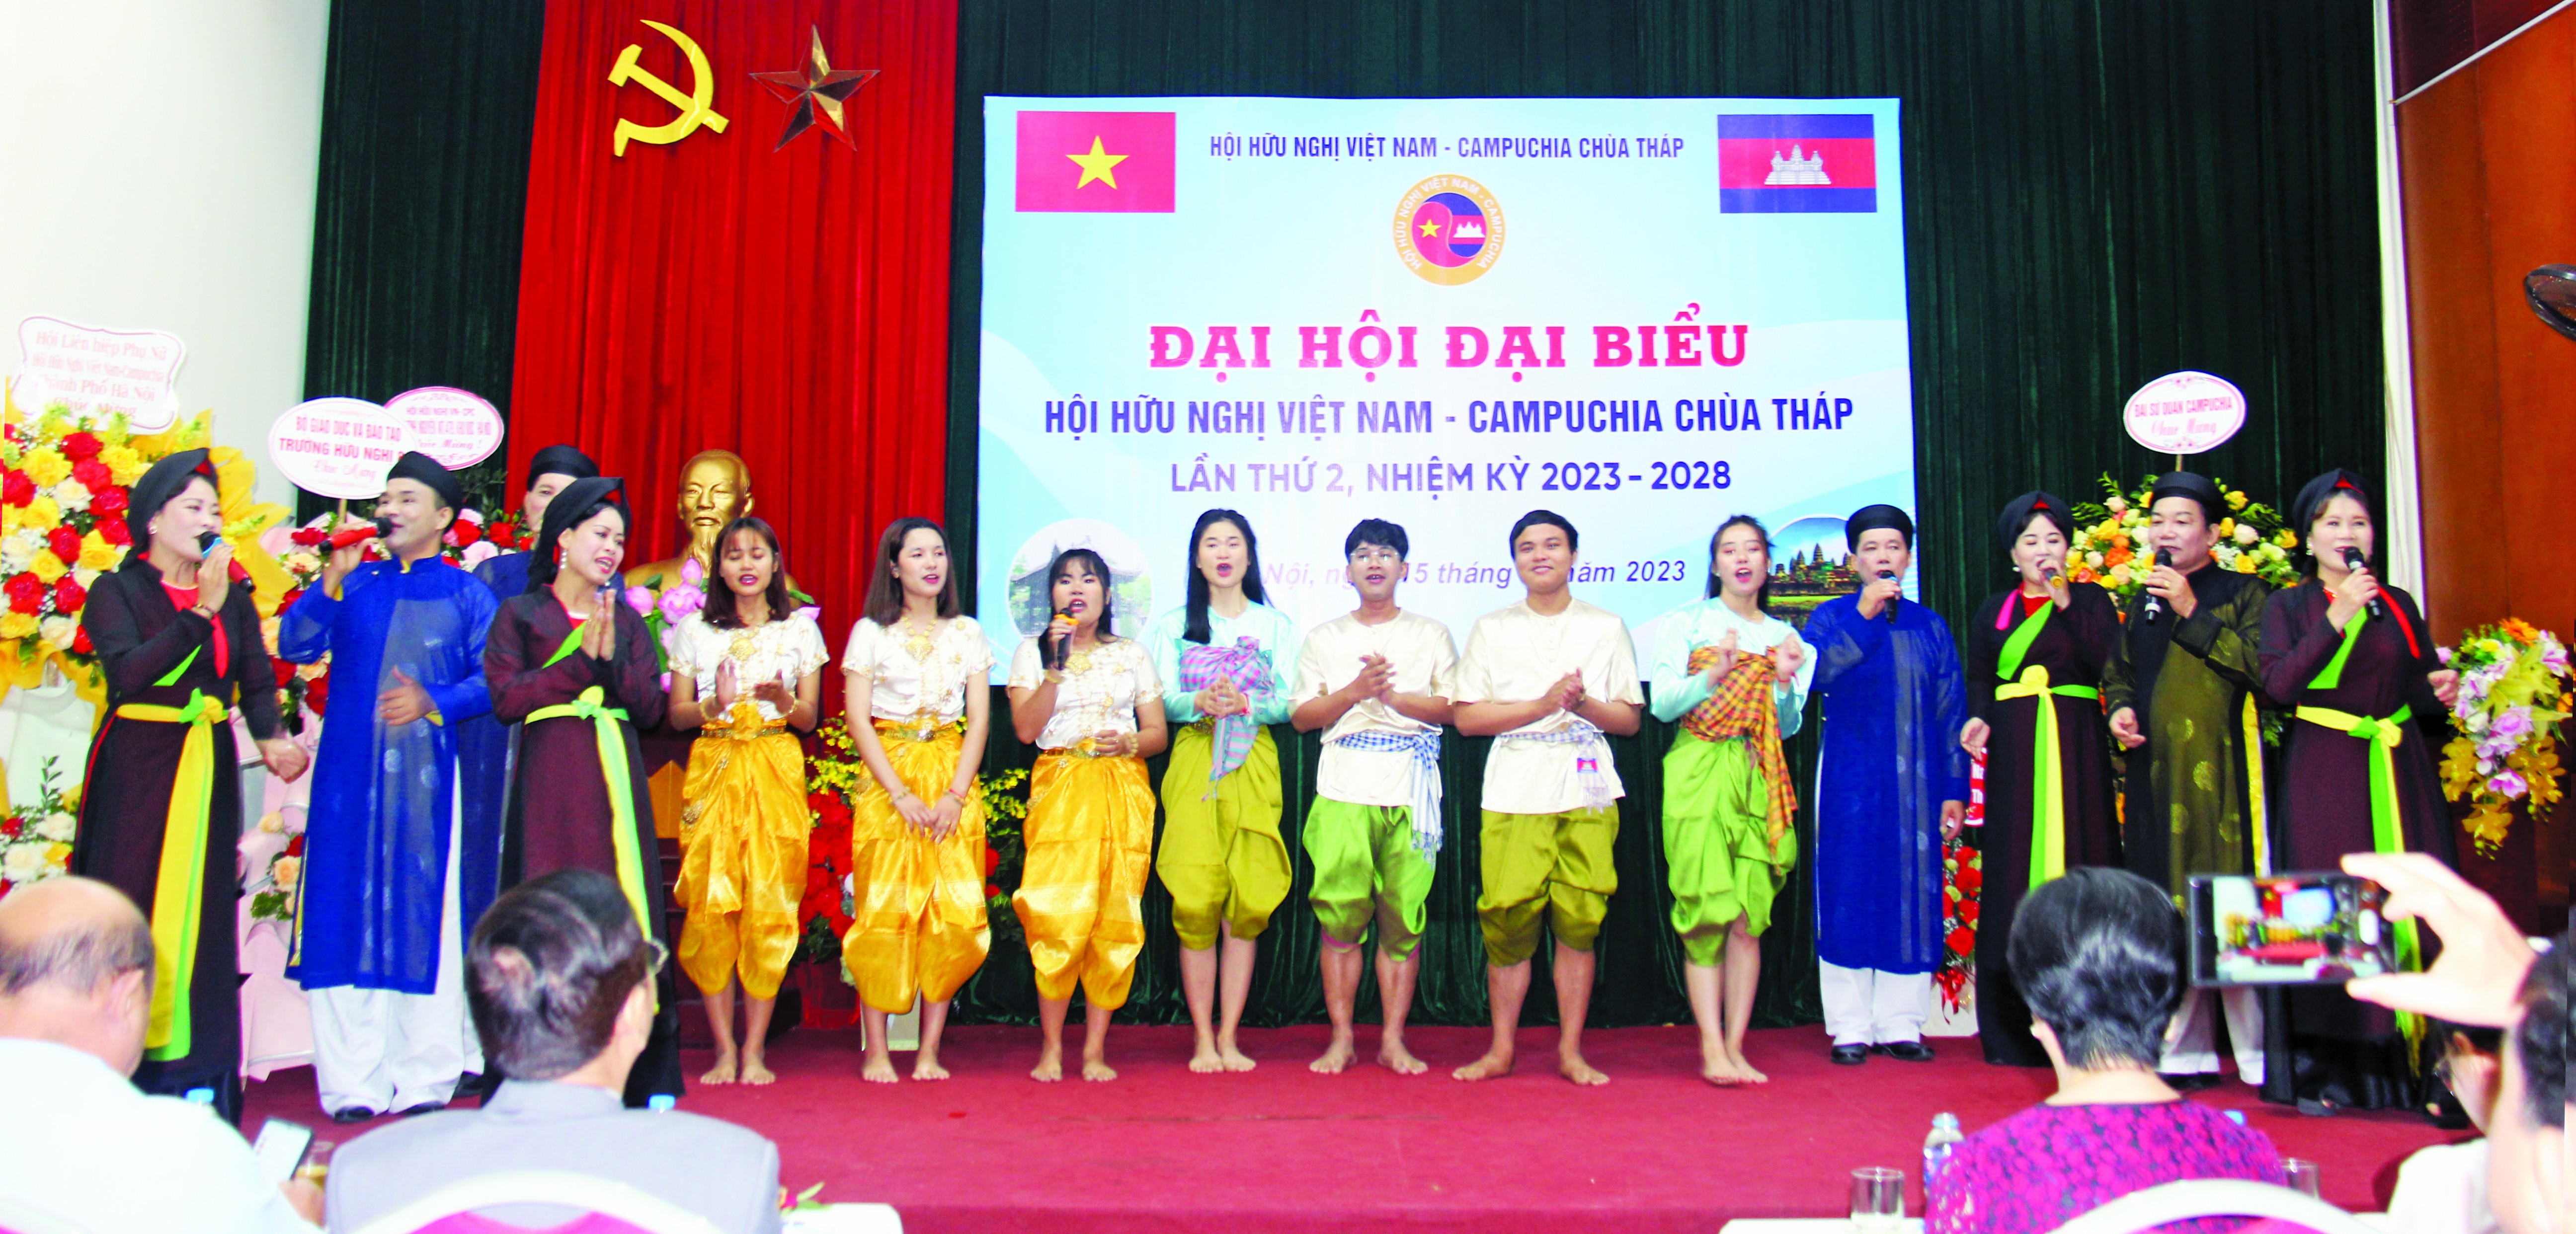 Chu thich Anh: Các lưu học sinh Campuchia biểu diễn văn nghệ tại Đại hội đại biểu Hội hữu nghị Việt Nam - Campuchia Chùa Tháp lần thứ II, nhiệm kỳ 2023-2028, tháng 10/2023. (Ảnh: Thành Luân)